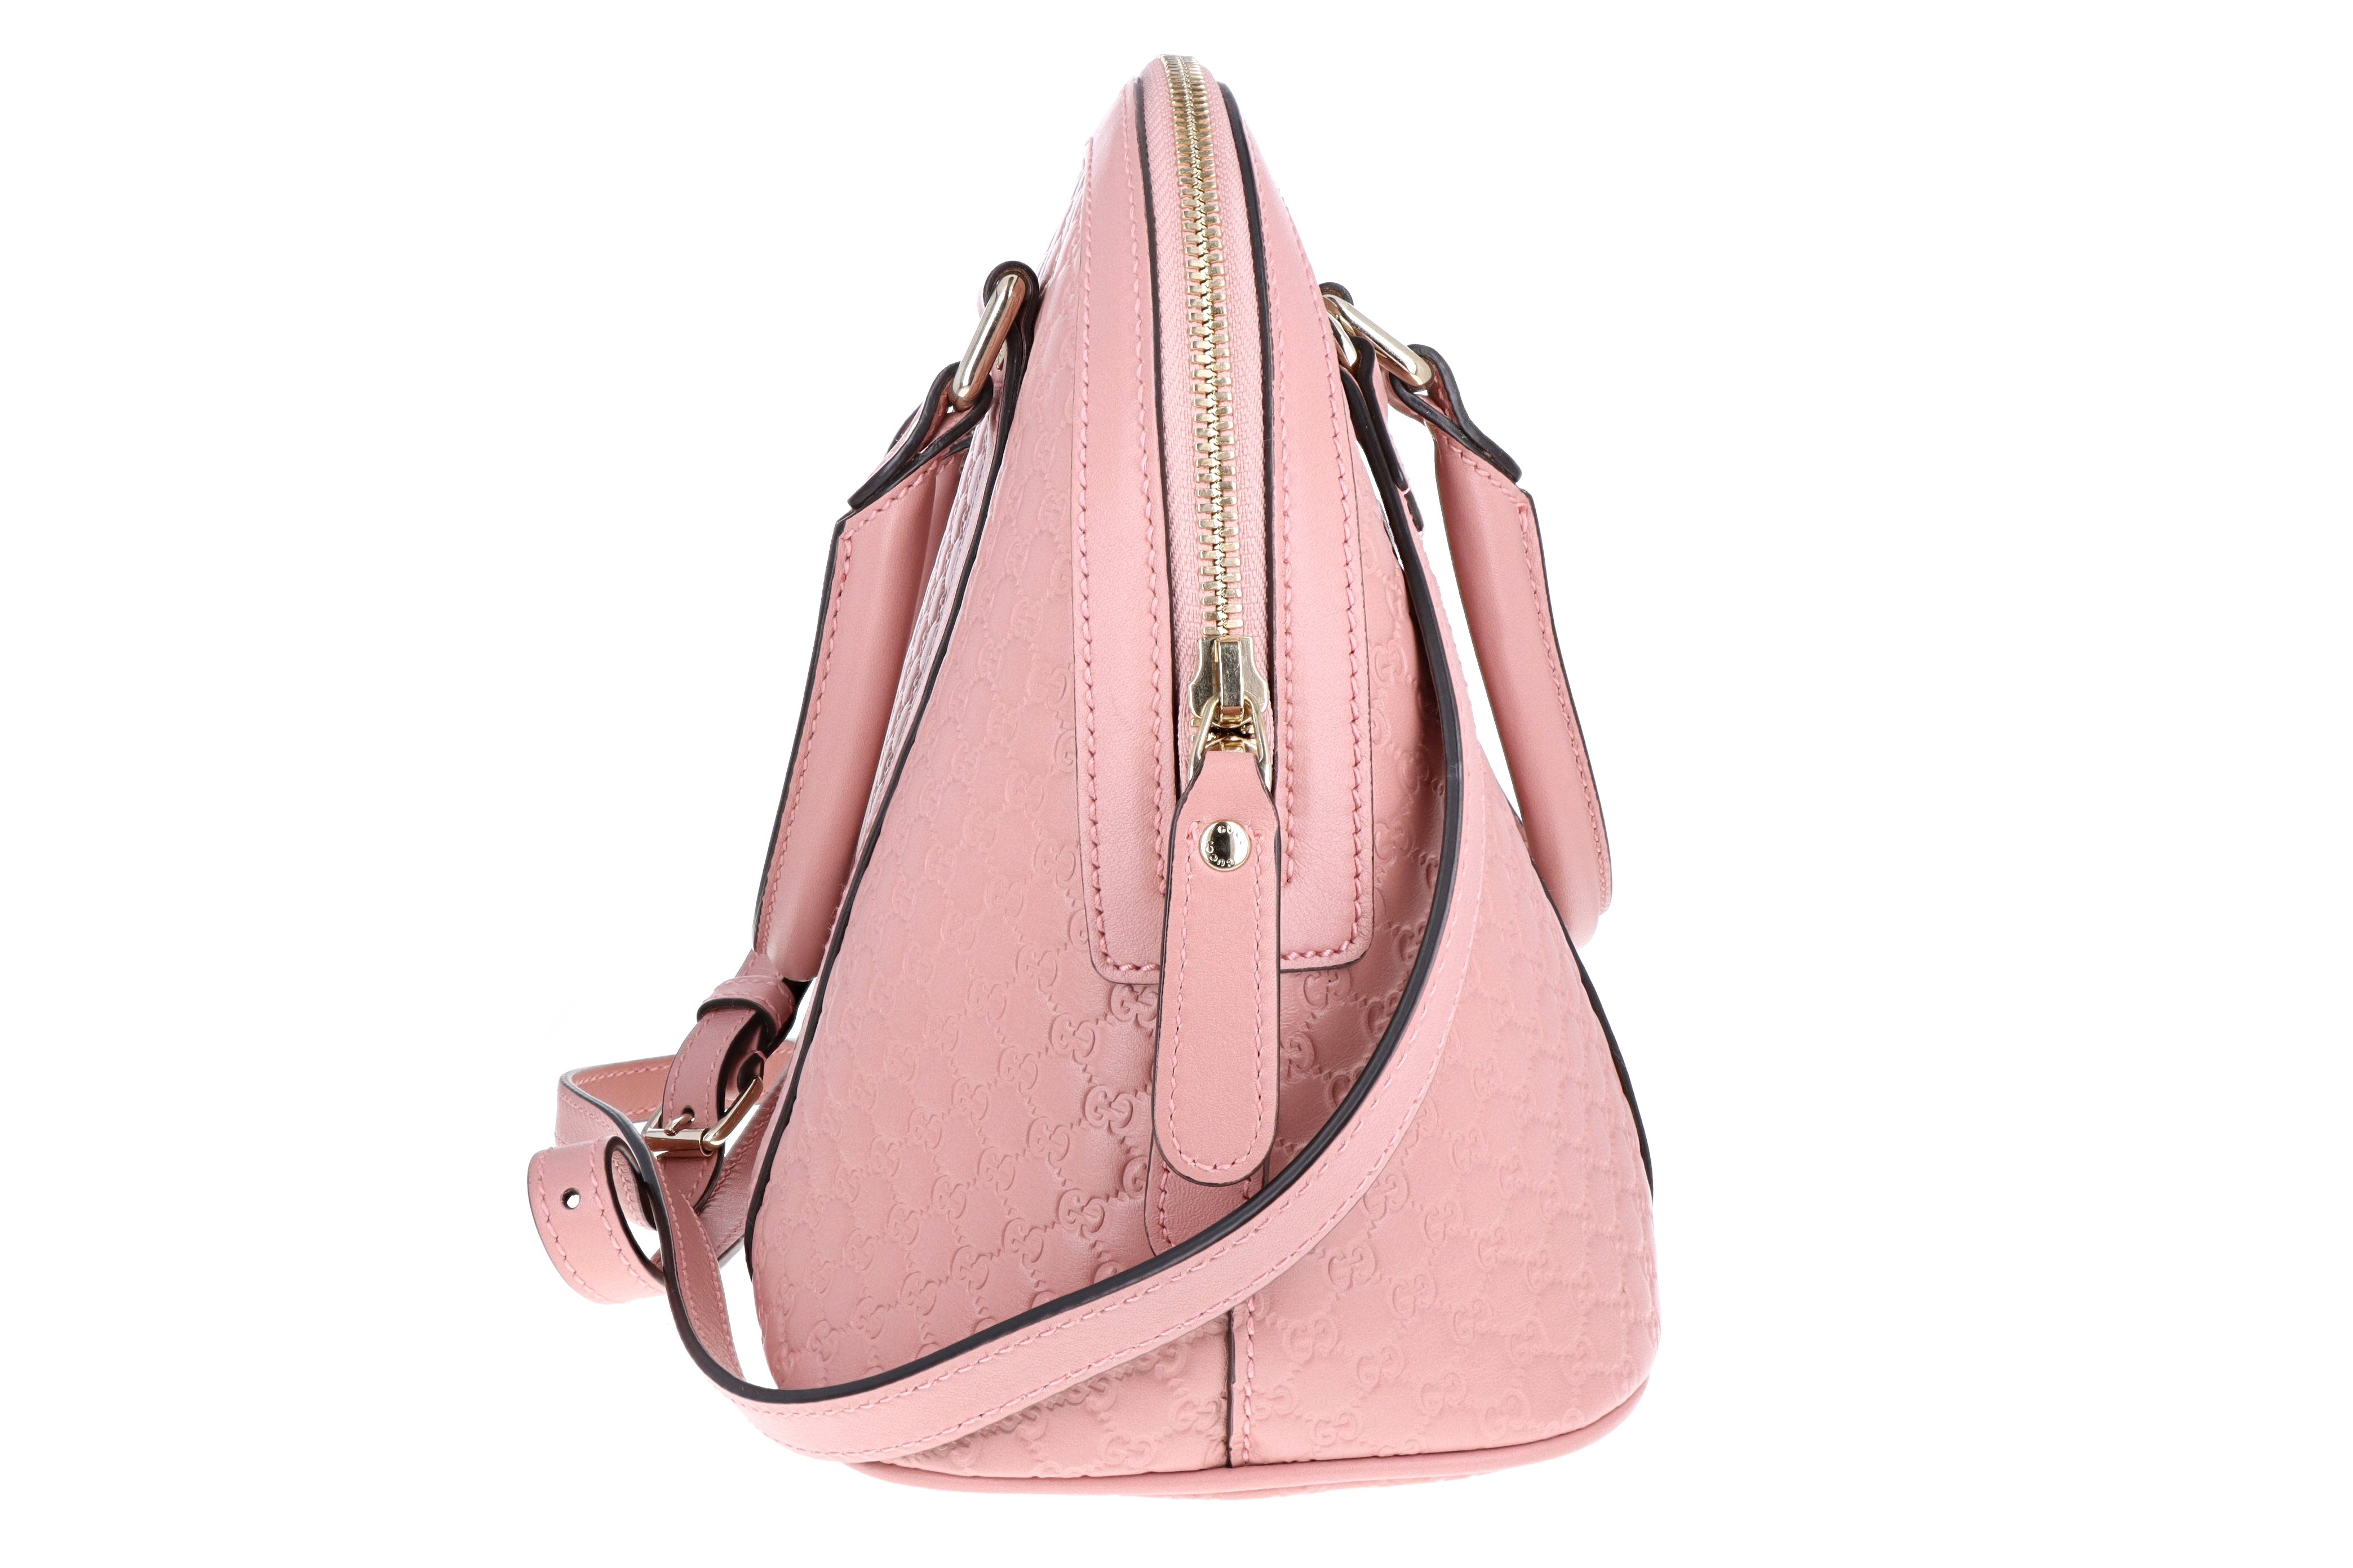 Gucci Mini Dome Micro Guccissima Leather Shoulder Bag Pink